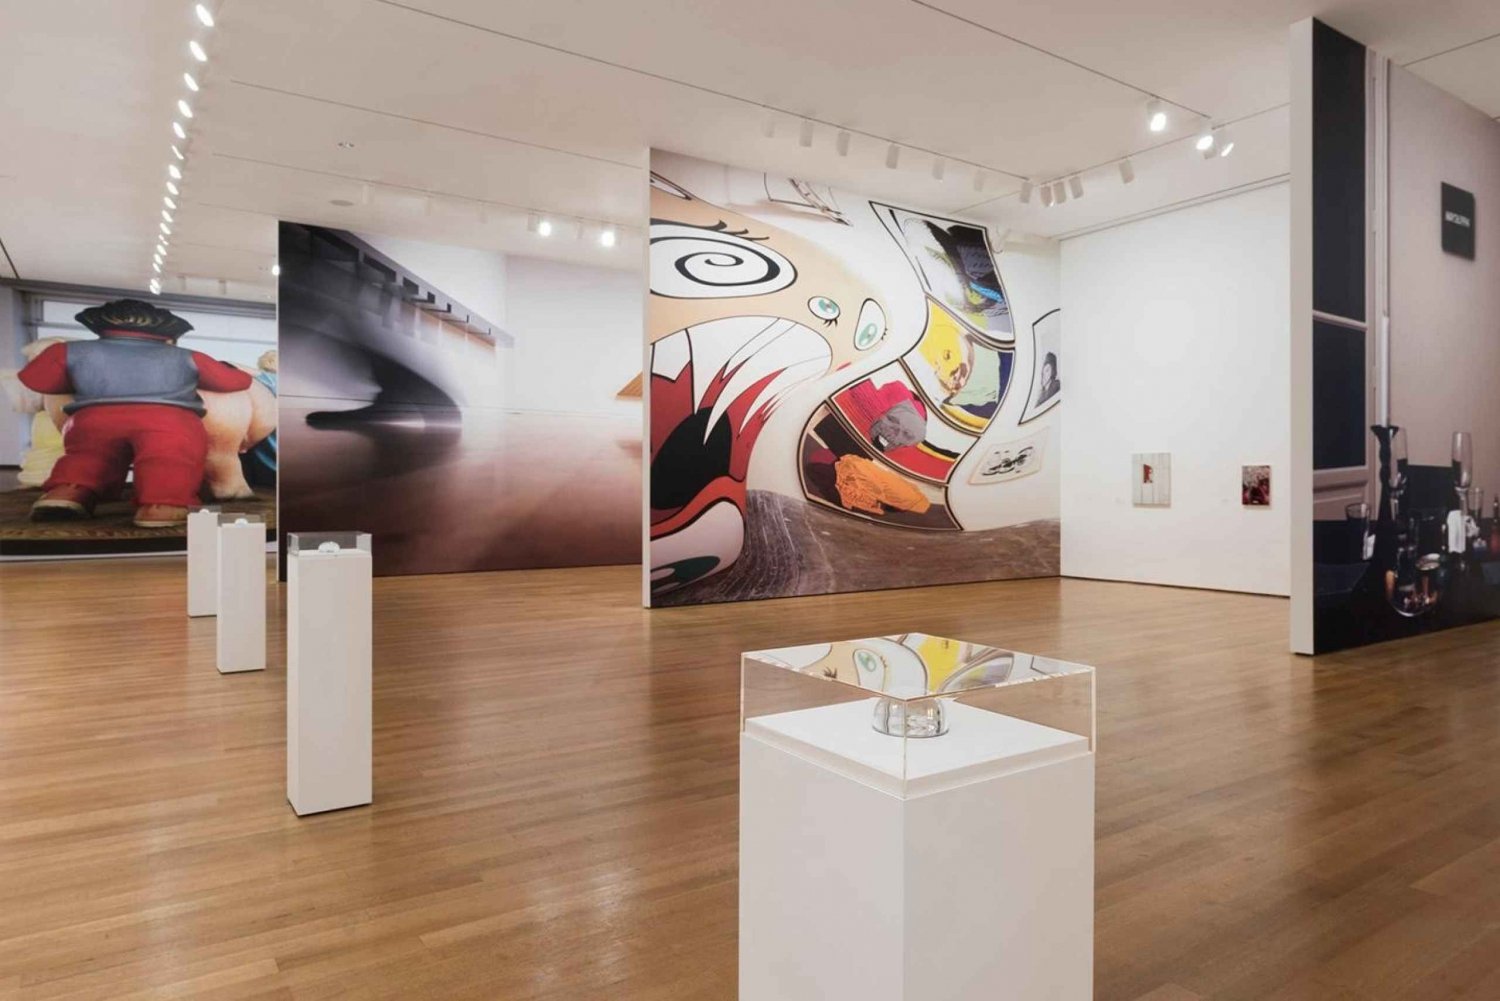 NYC Visita el Museo de Arte Moderno y más de 30 lugares de interés turístico a pie